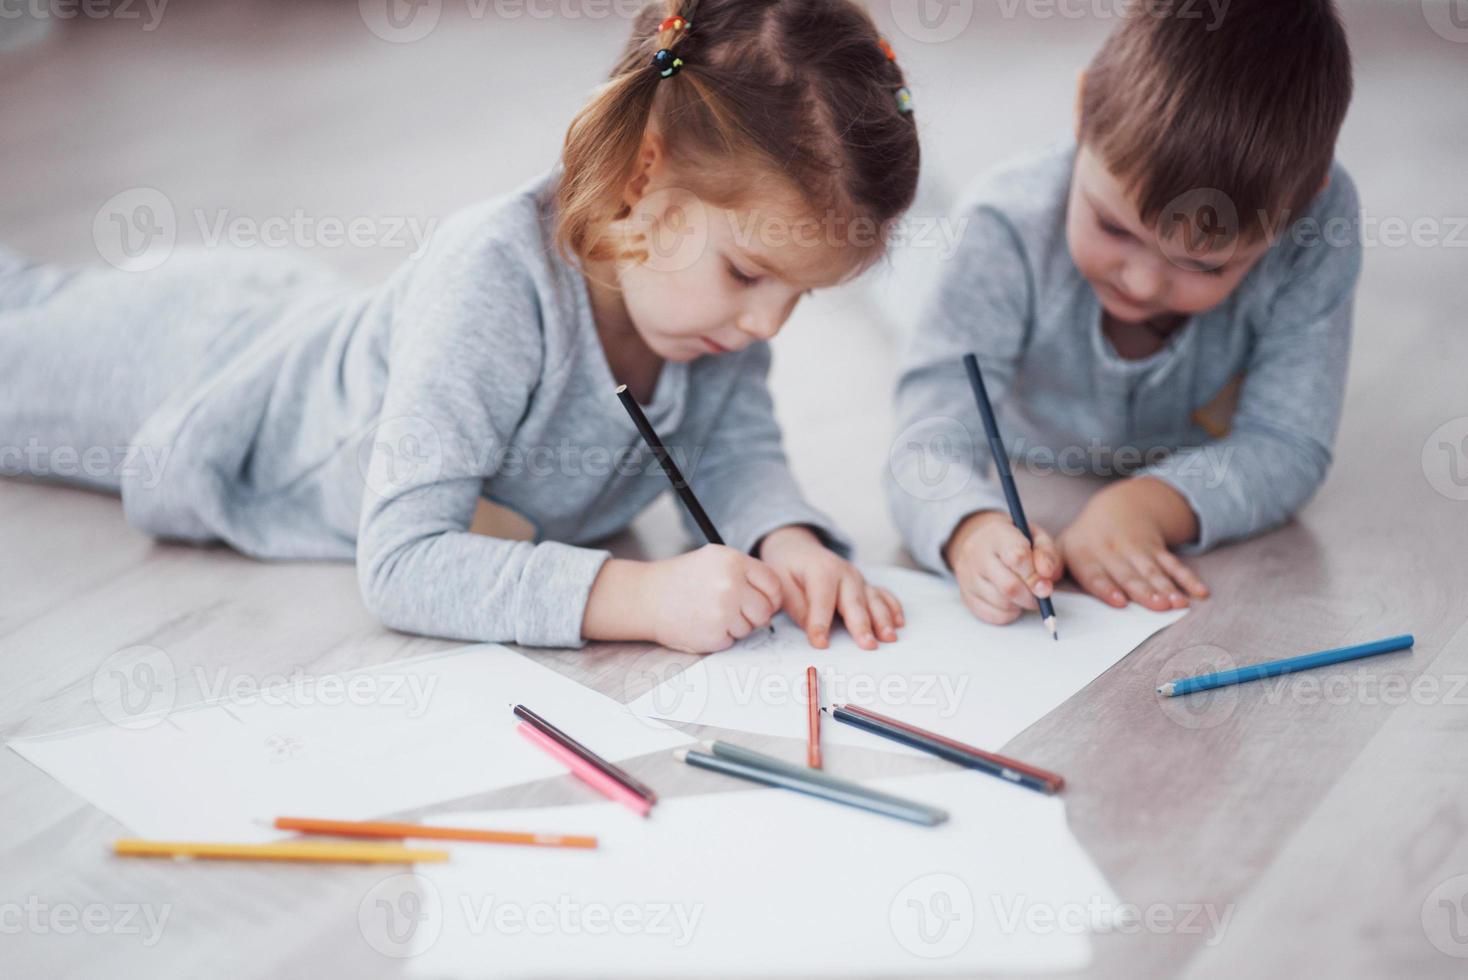 kinderen liggen in pyjama op de grond en tekenen met potloden. schattig kind schilderen met potloden foto